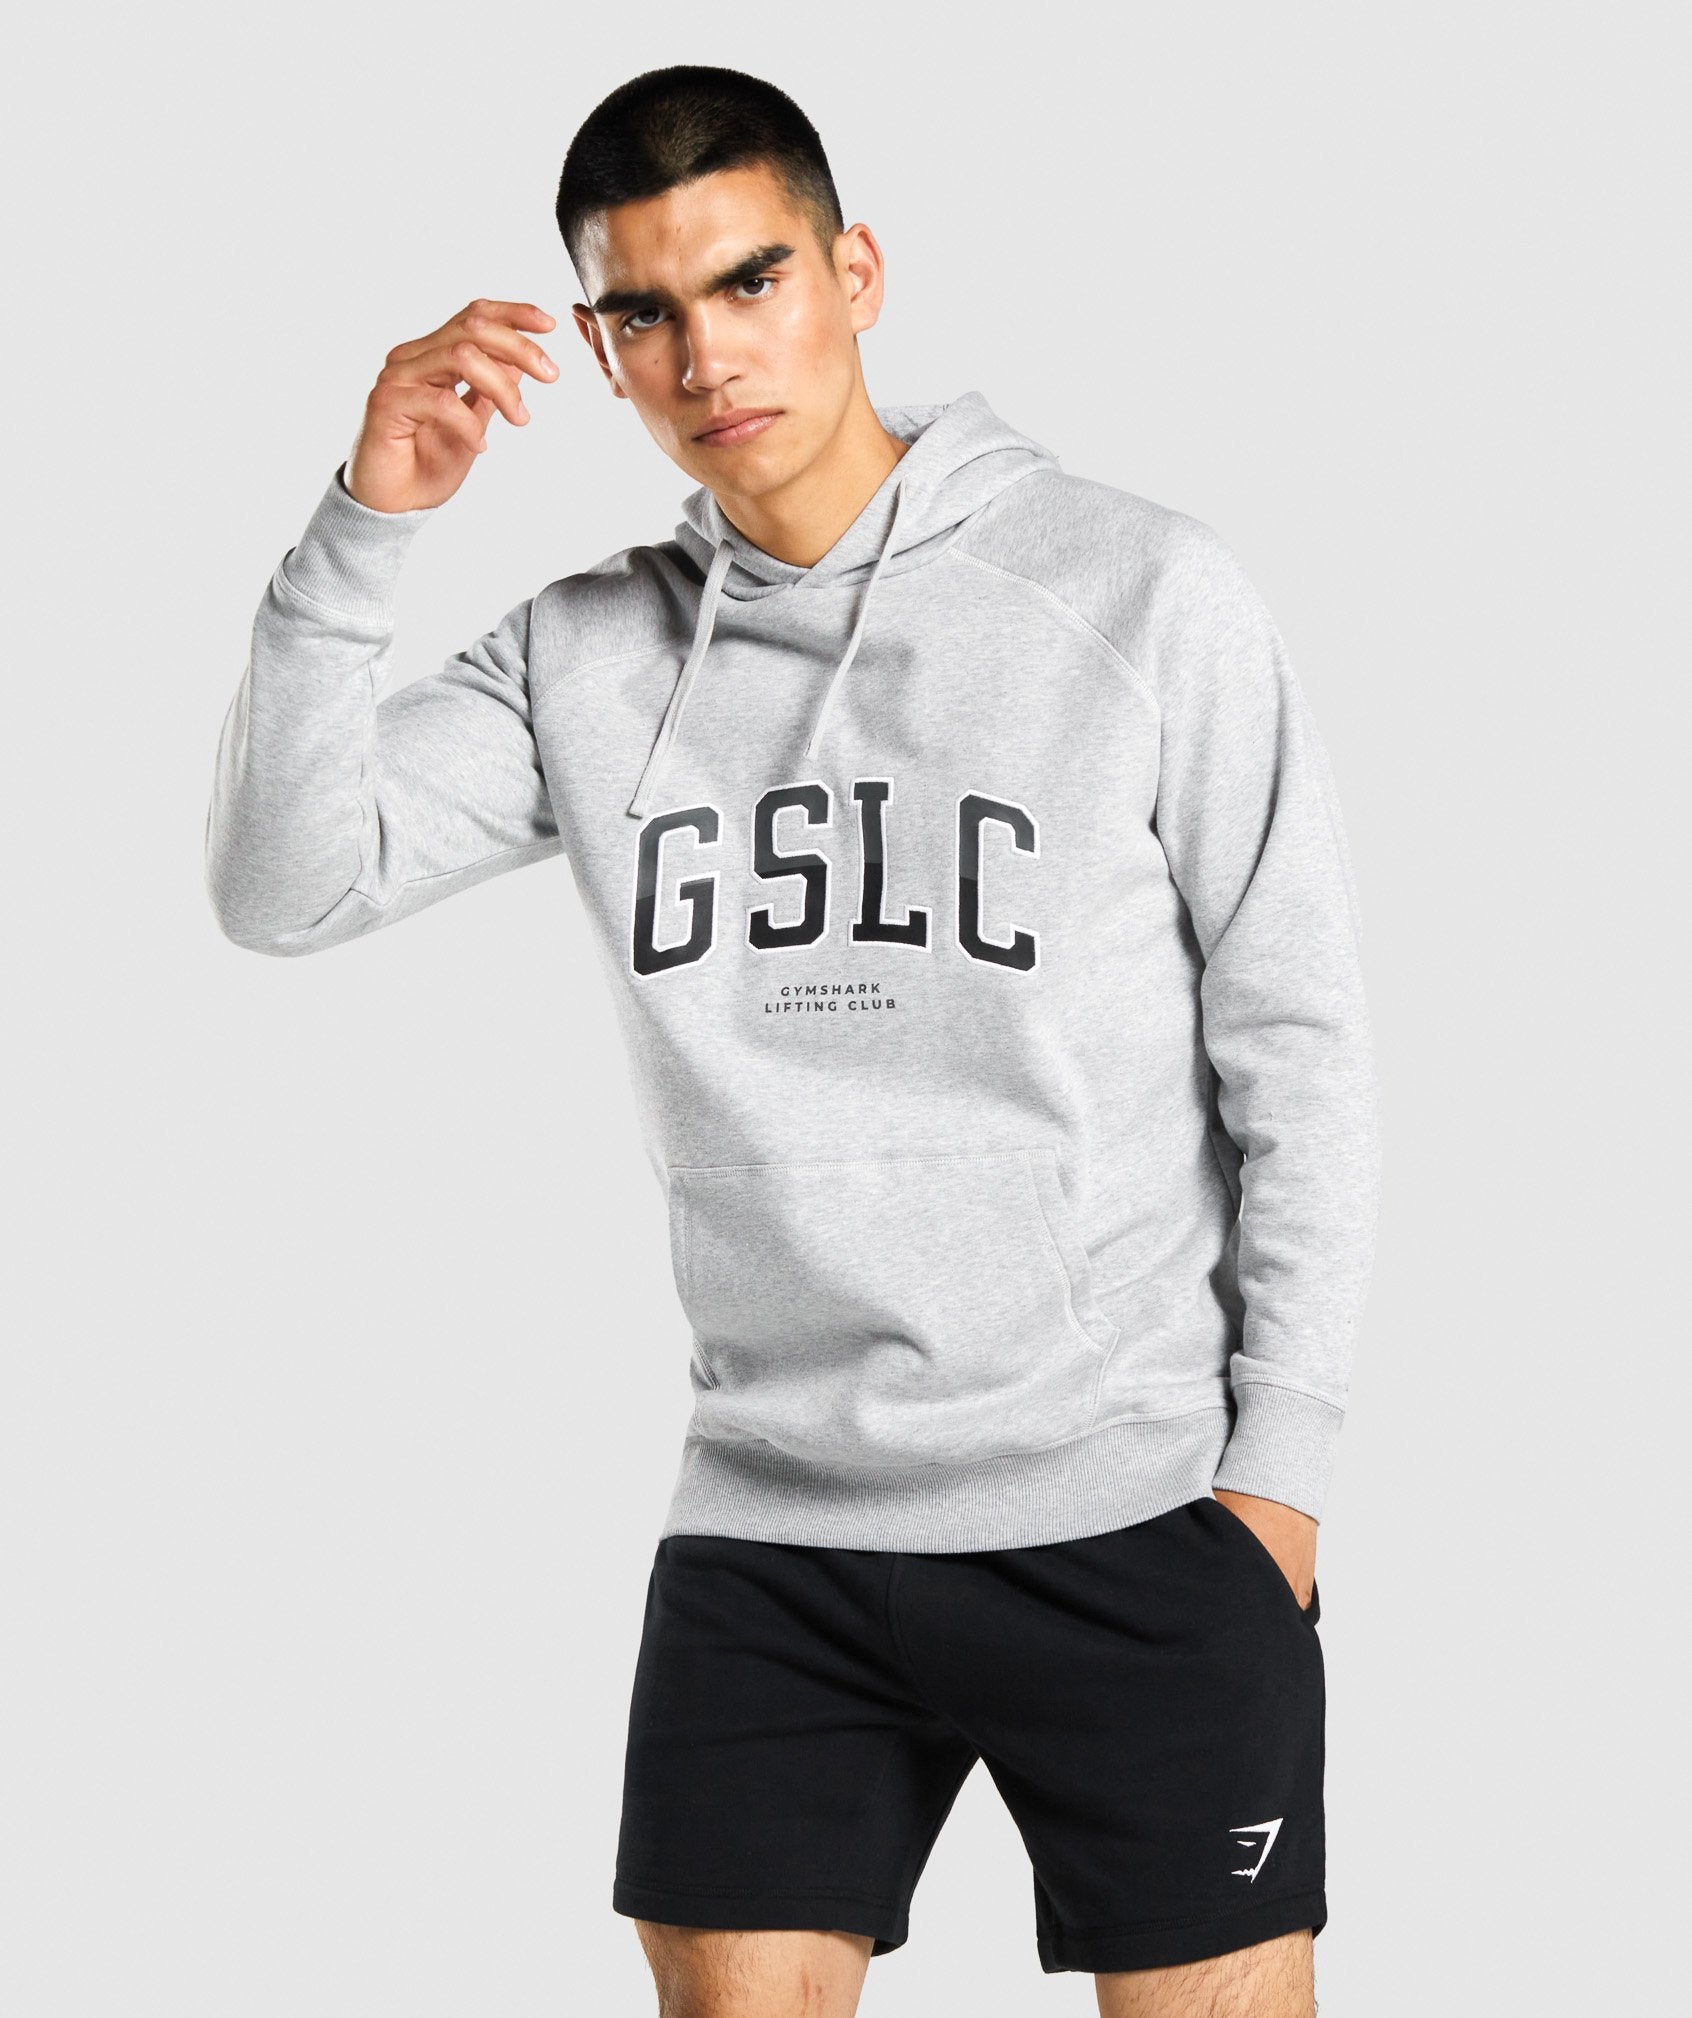 GSLC Collegiate Hoodie in Light Grey Marl - view 1